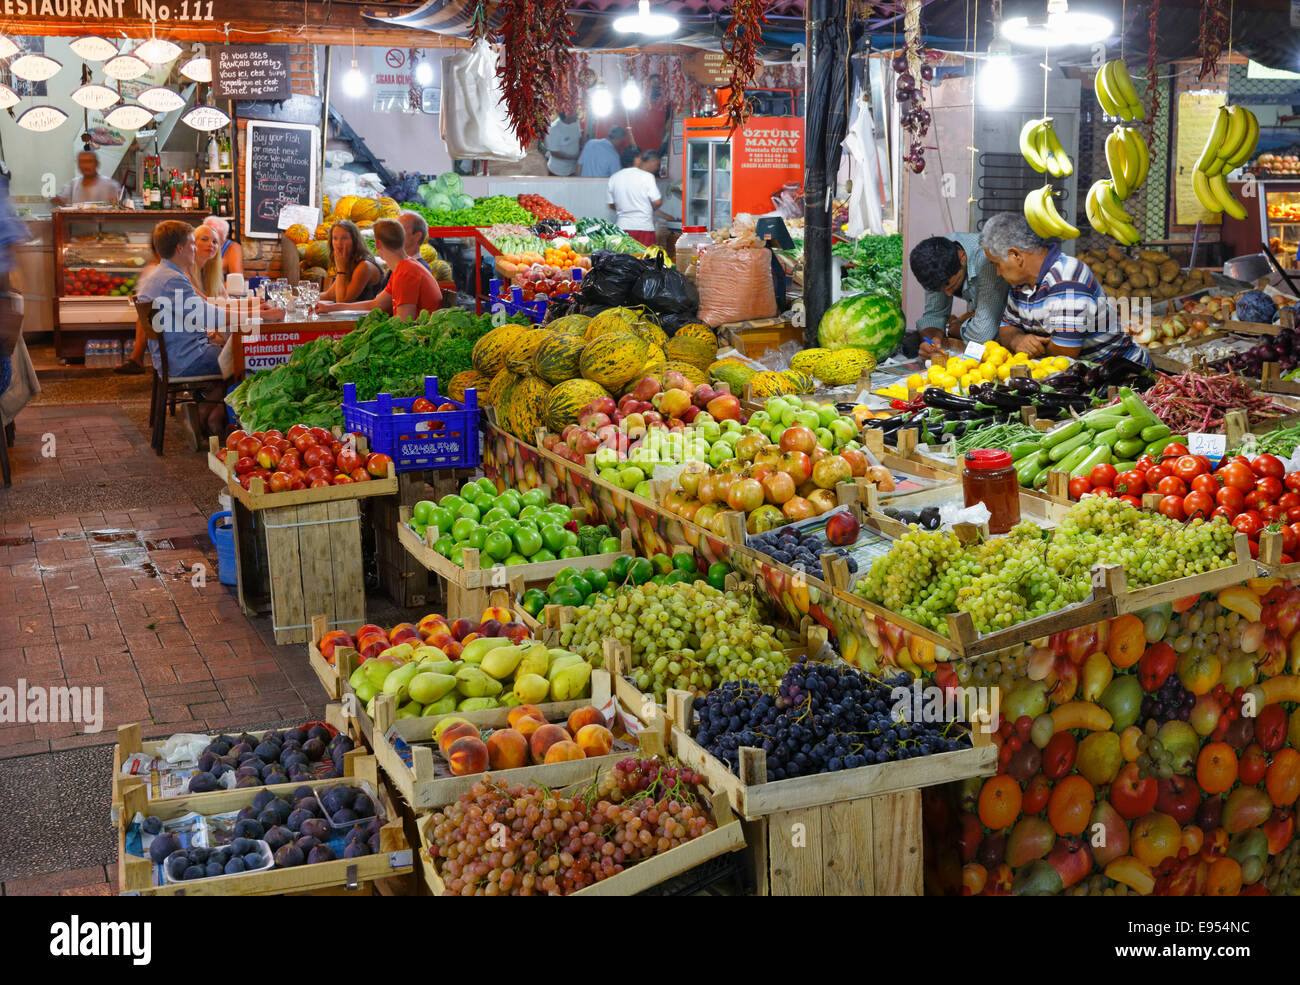 Market stall with fruit, Fethiye, Muğla province, Aegean Region, Turkey Stock Photo